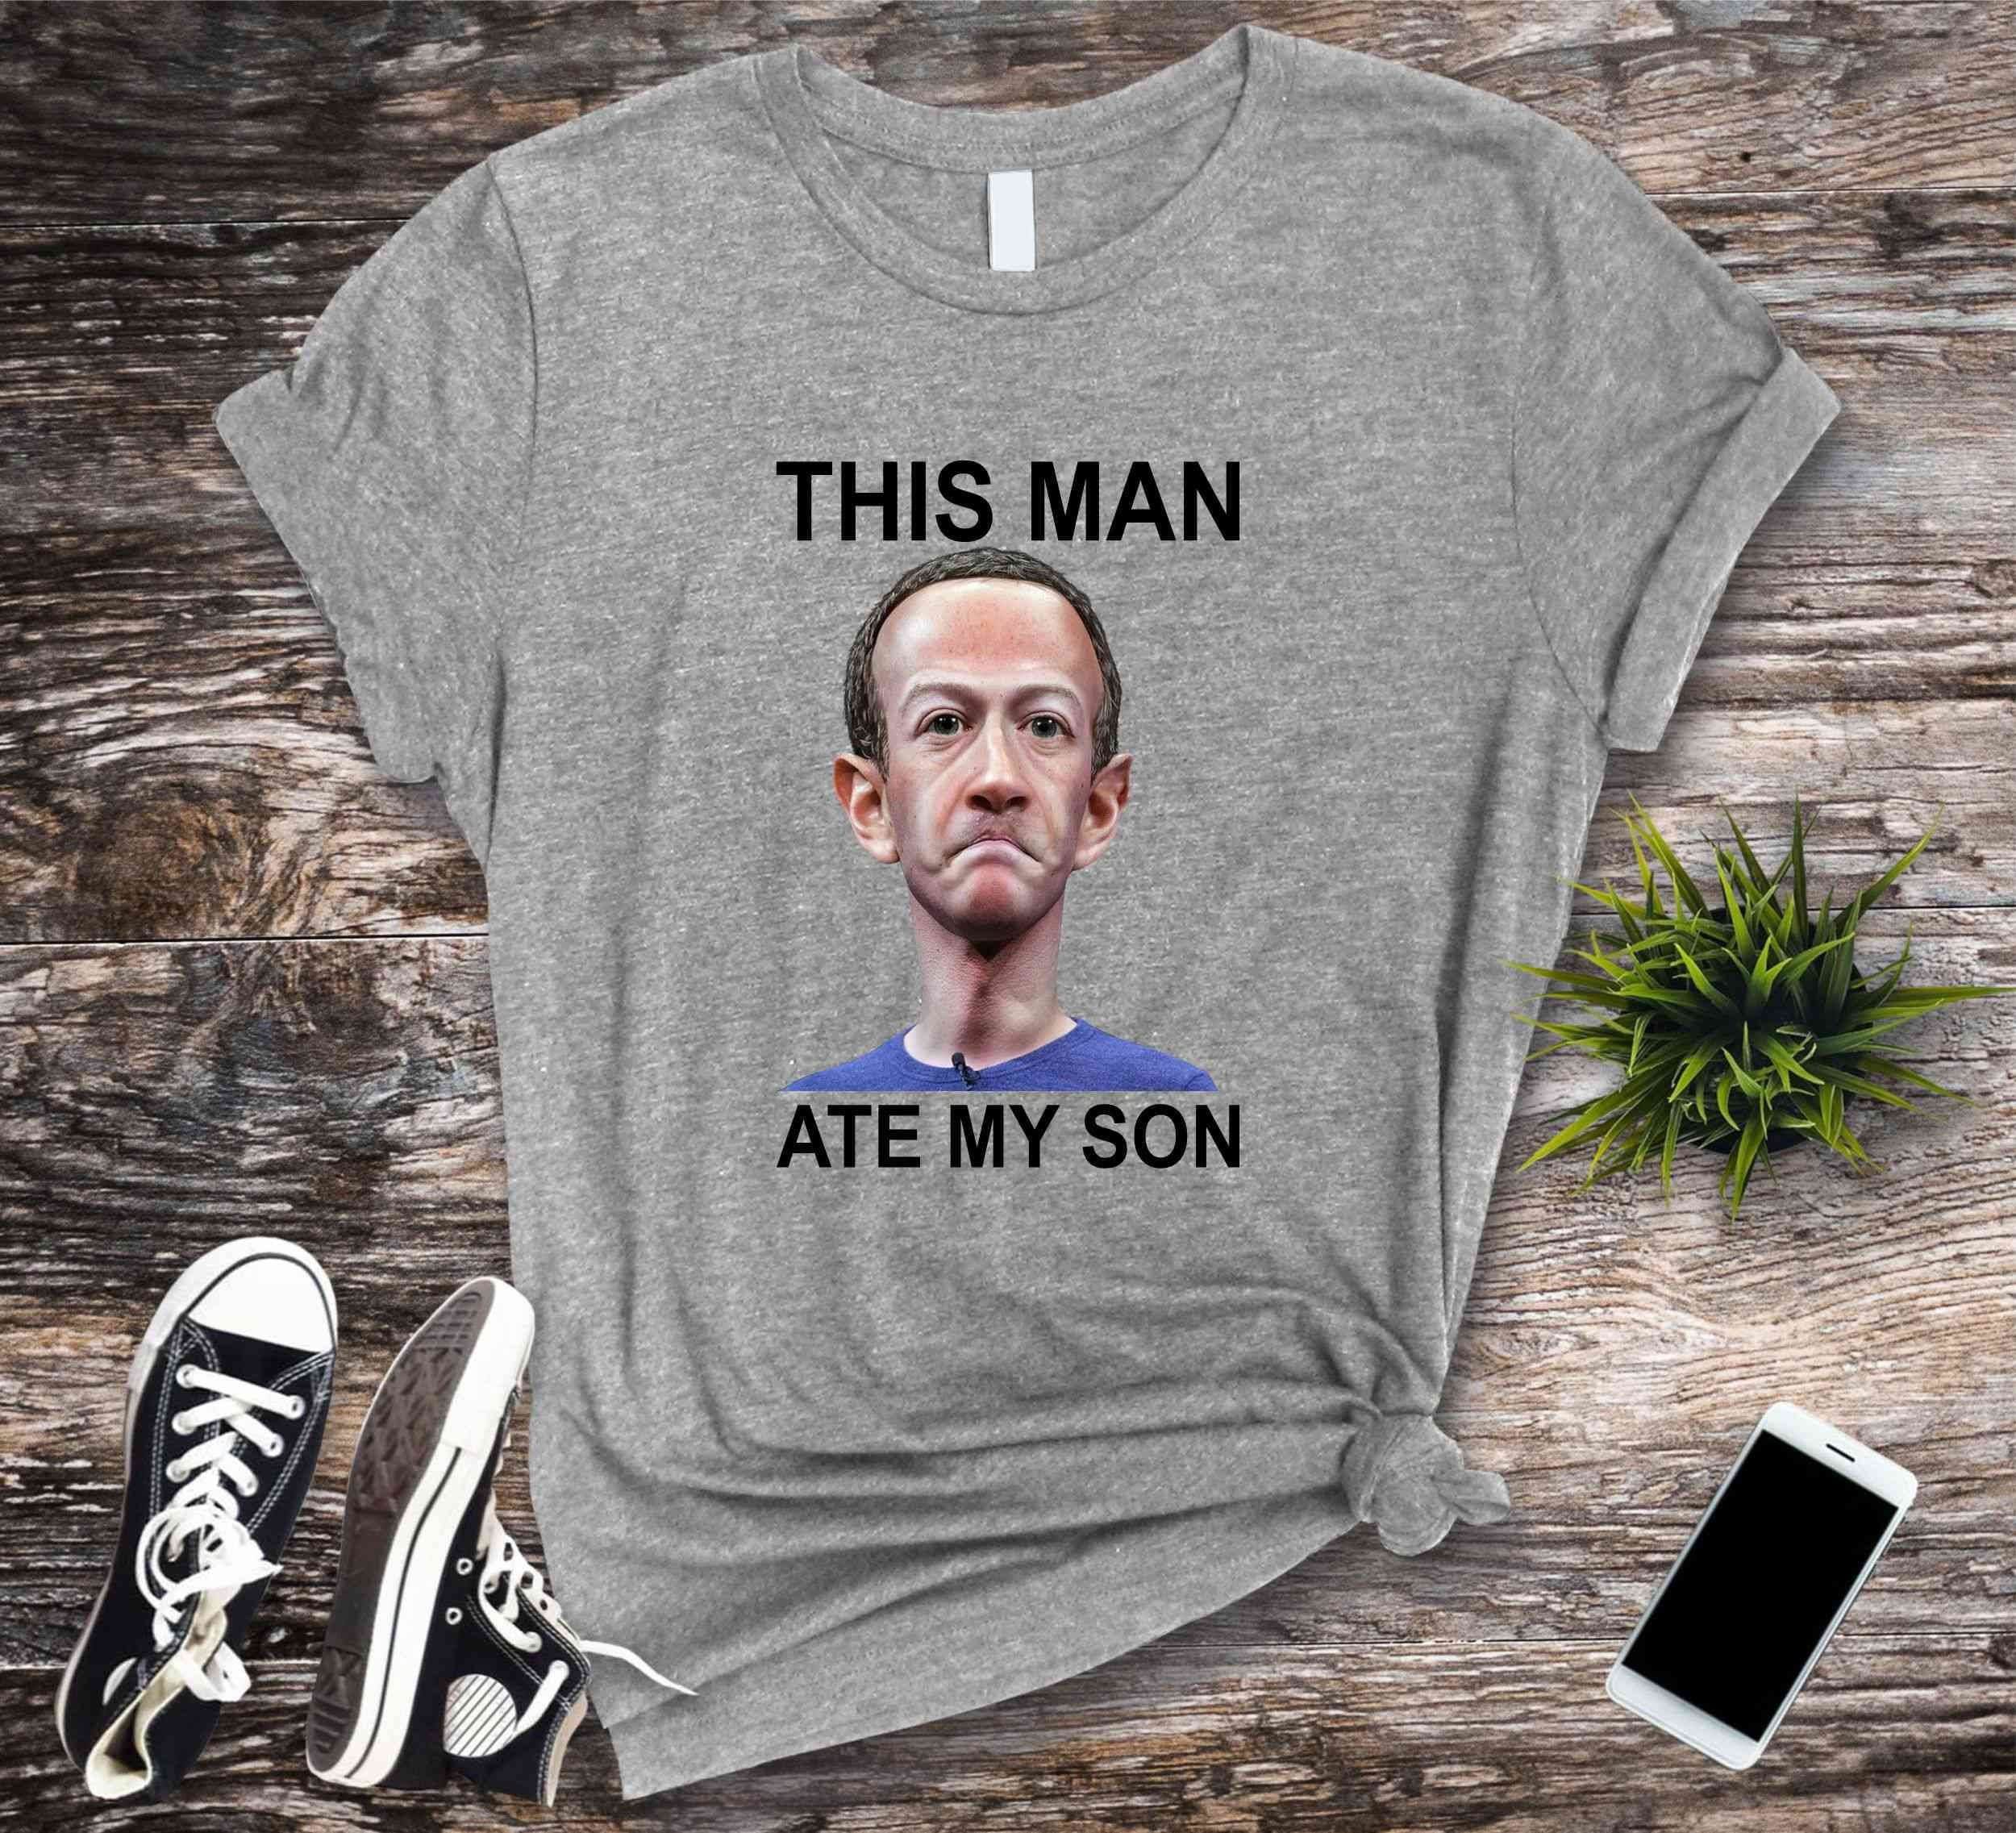 This man ate my son Tshirt,Funny Meme Shirts,Cursed Meme T Shirt Gift, Dank  Memer Tshirt,Dank Meme Shirt, Cursed Tshirts,Zuckerberg Meme Tee 